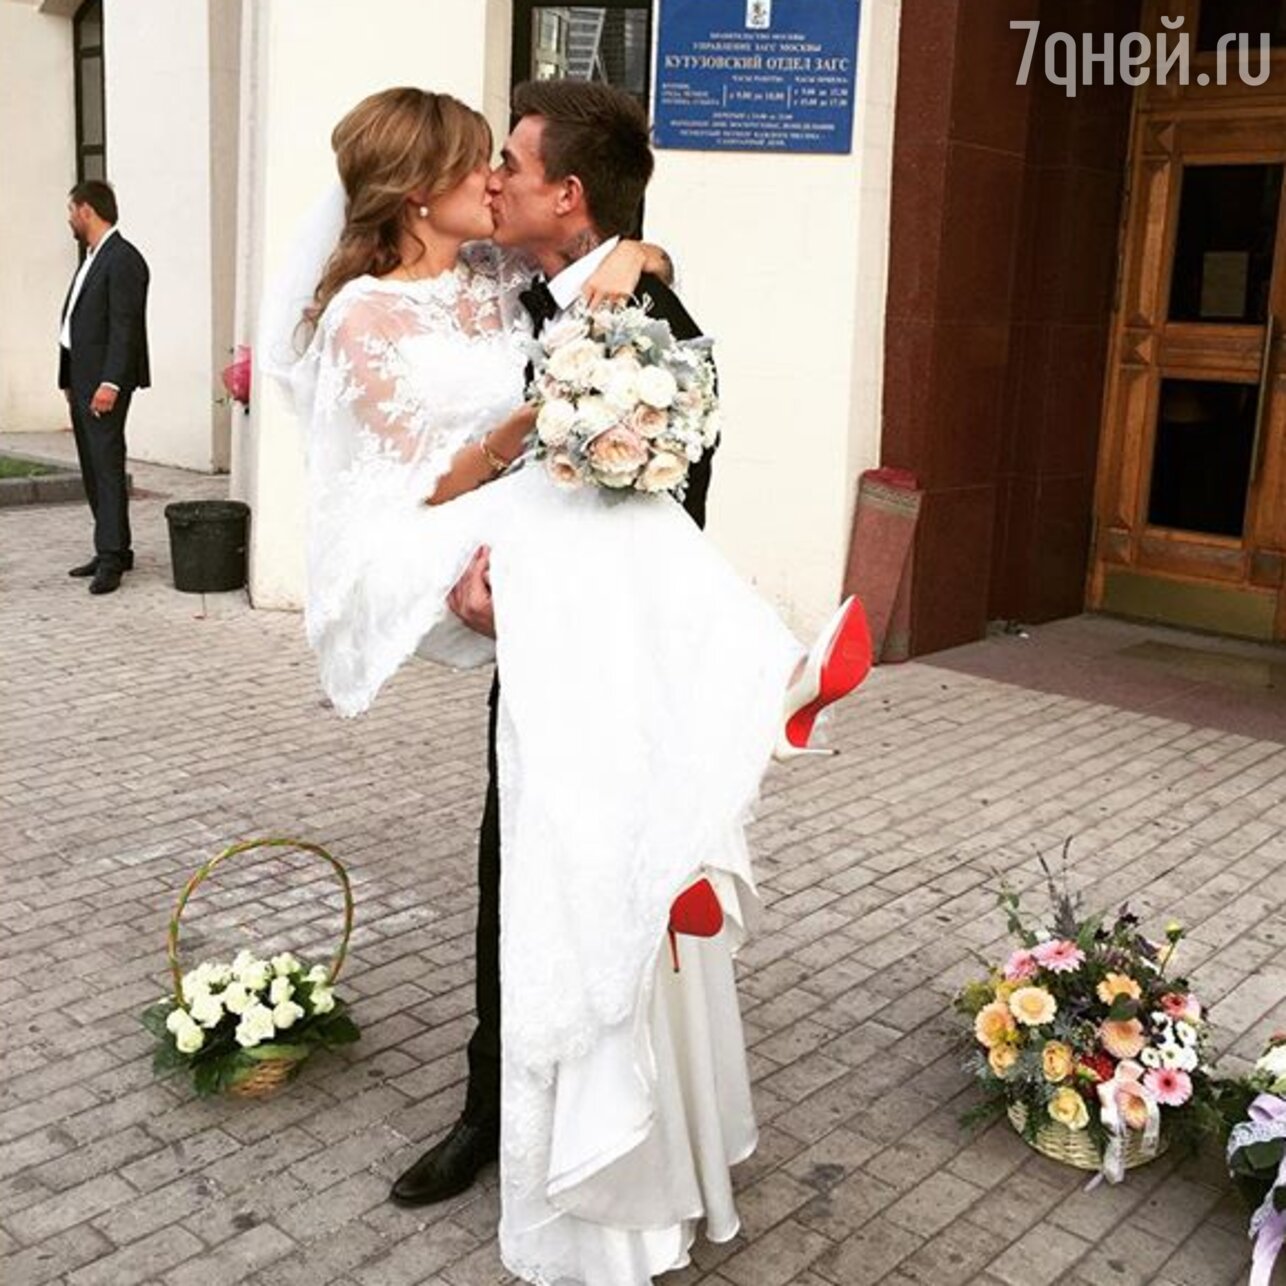 Постельное фото Влада Топалова с женой попало в Интернет | STARHIT